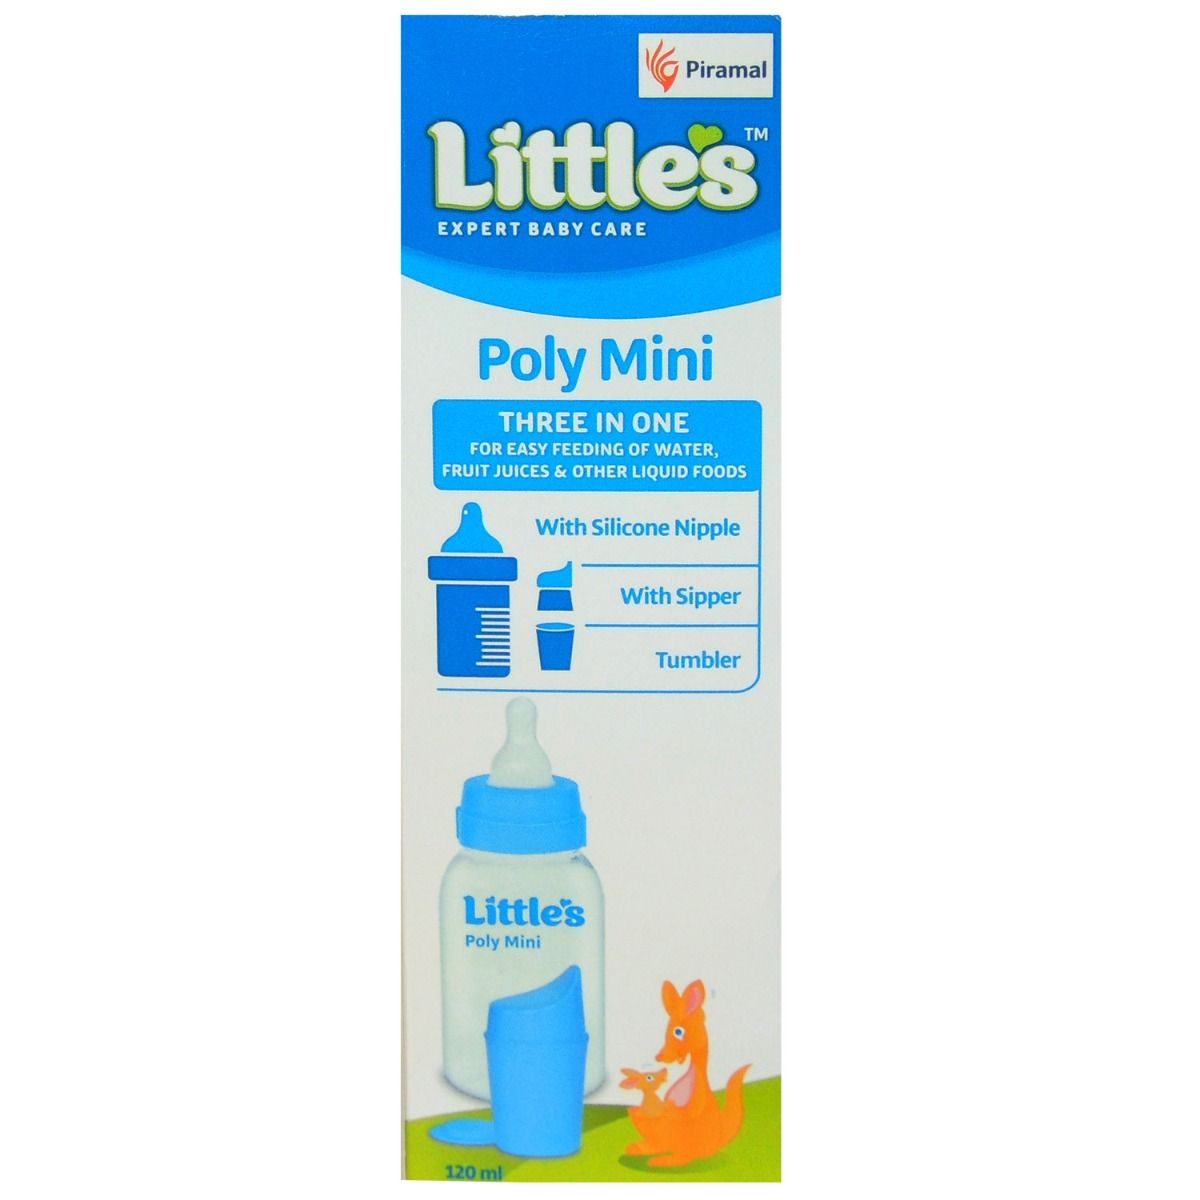 Little's Poly Mini Blue Feeding Bottle, 120ml, Pack of 1 